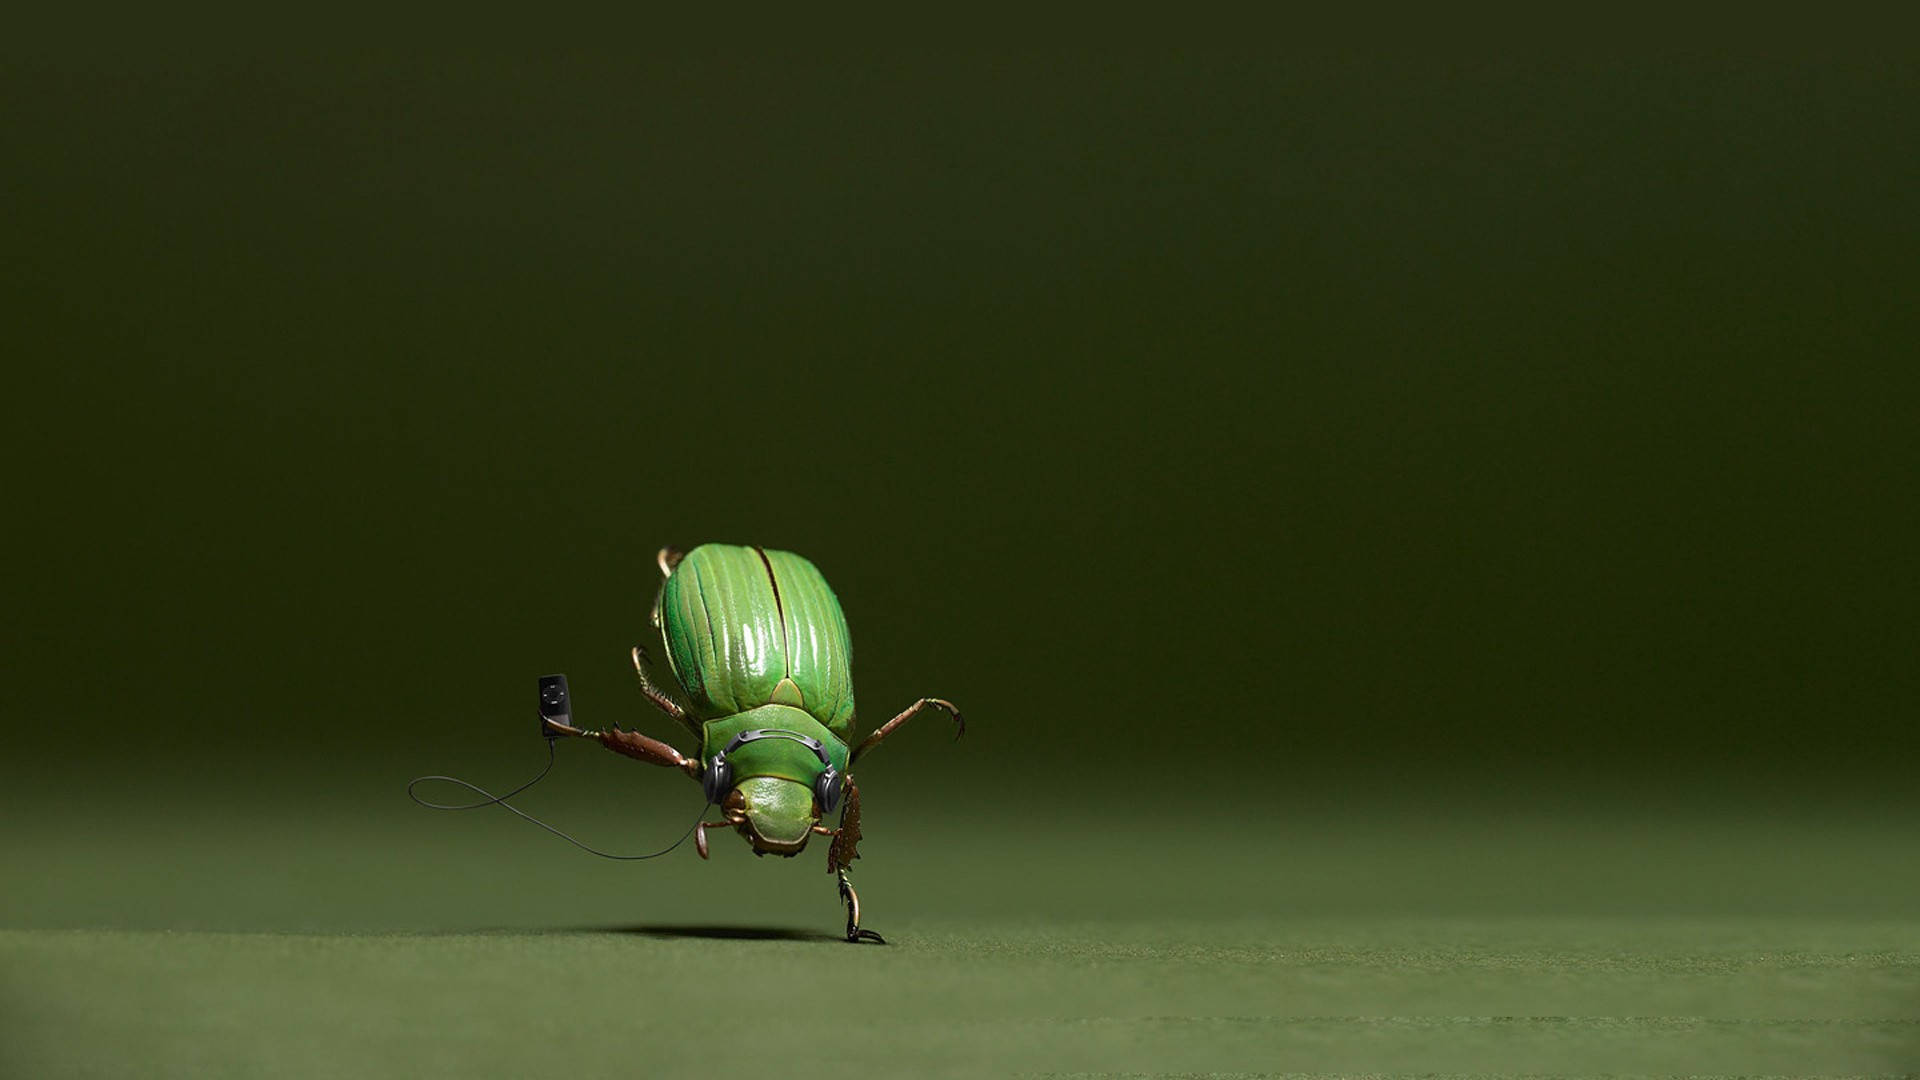 Dancing Green Beetle Wallpaper